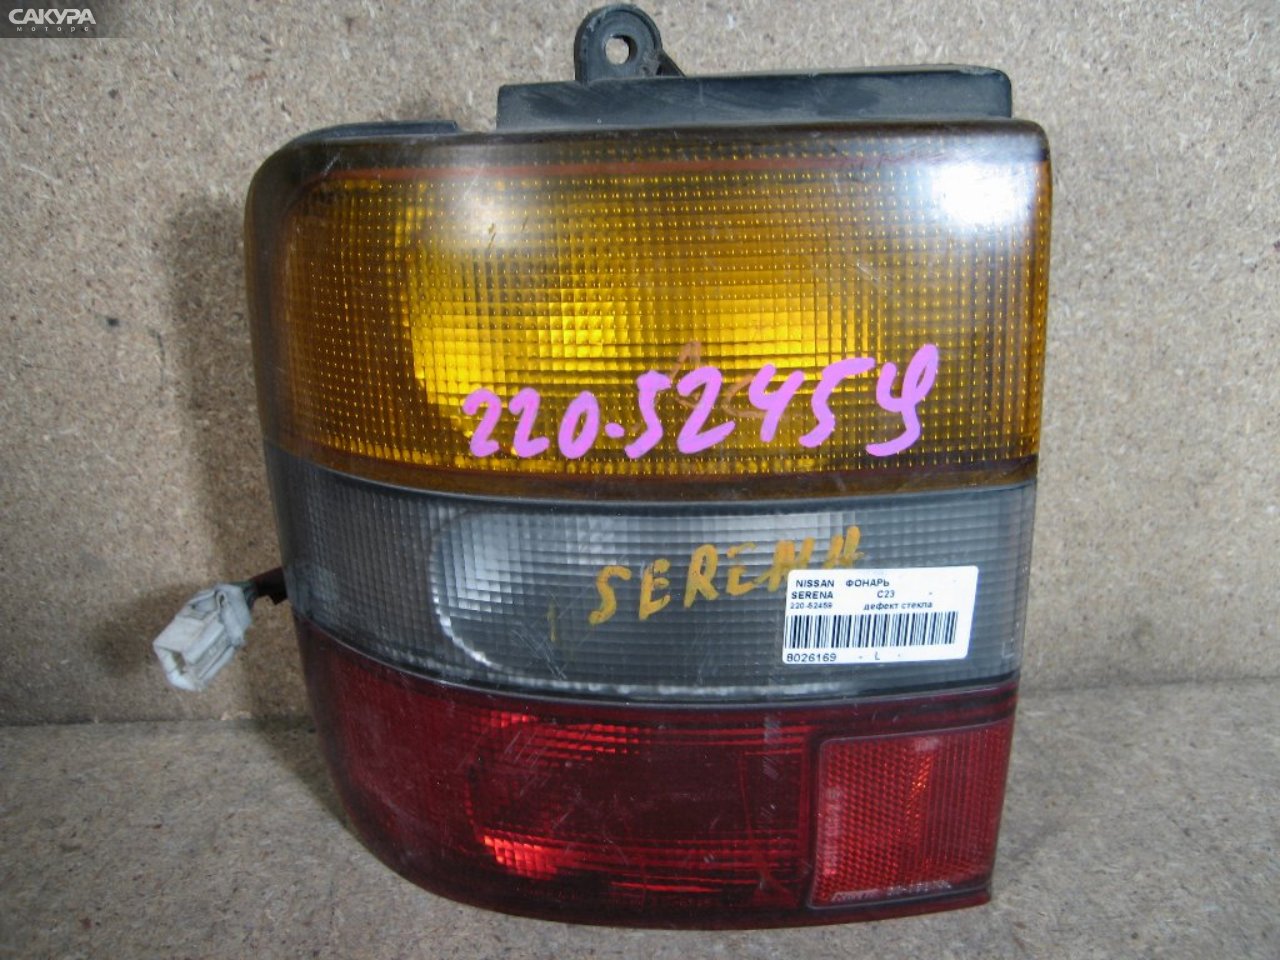 Фонарь стоп-сигнала левый Nissan Serena KBC23 220-52459: купить в Сакура Абакан.